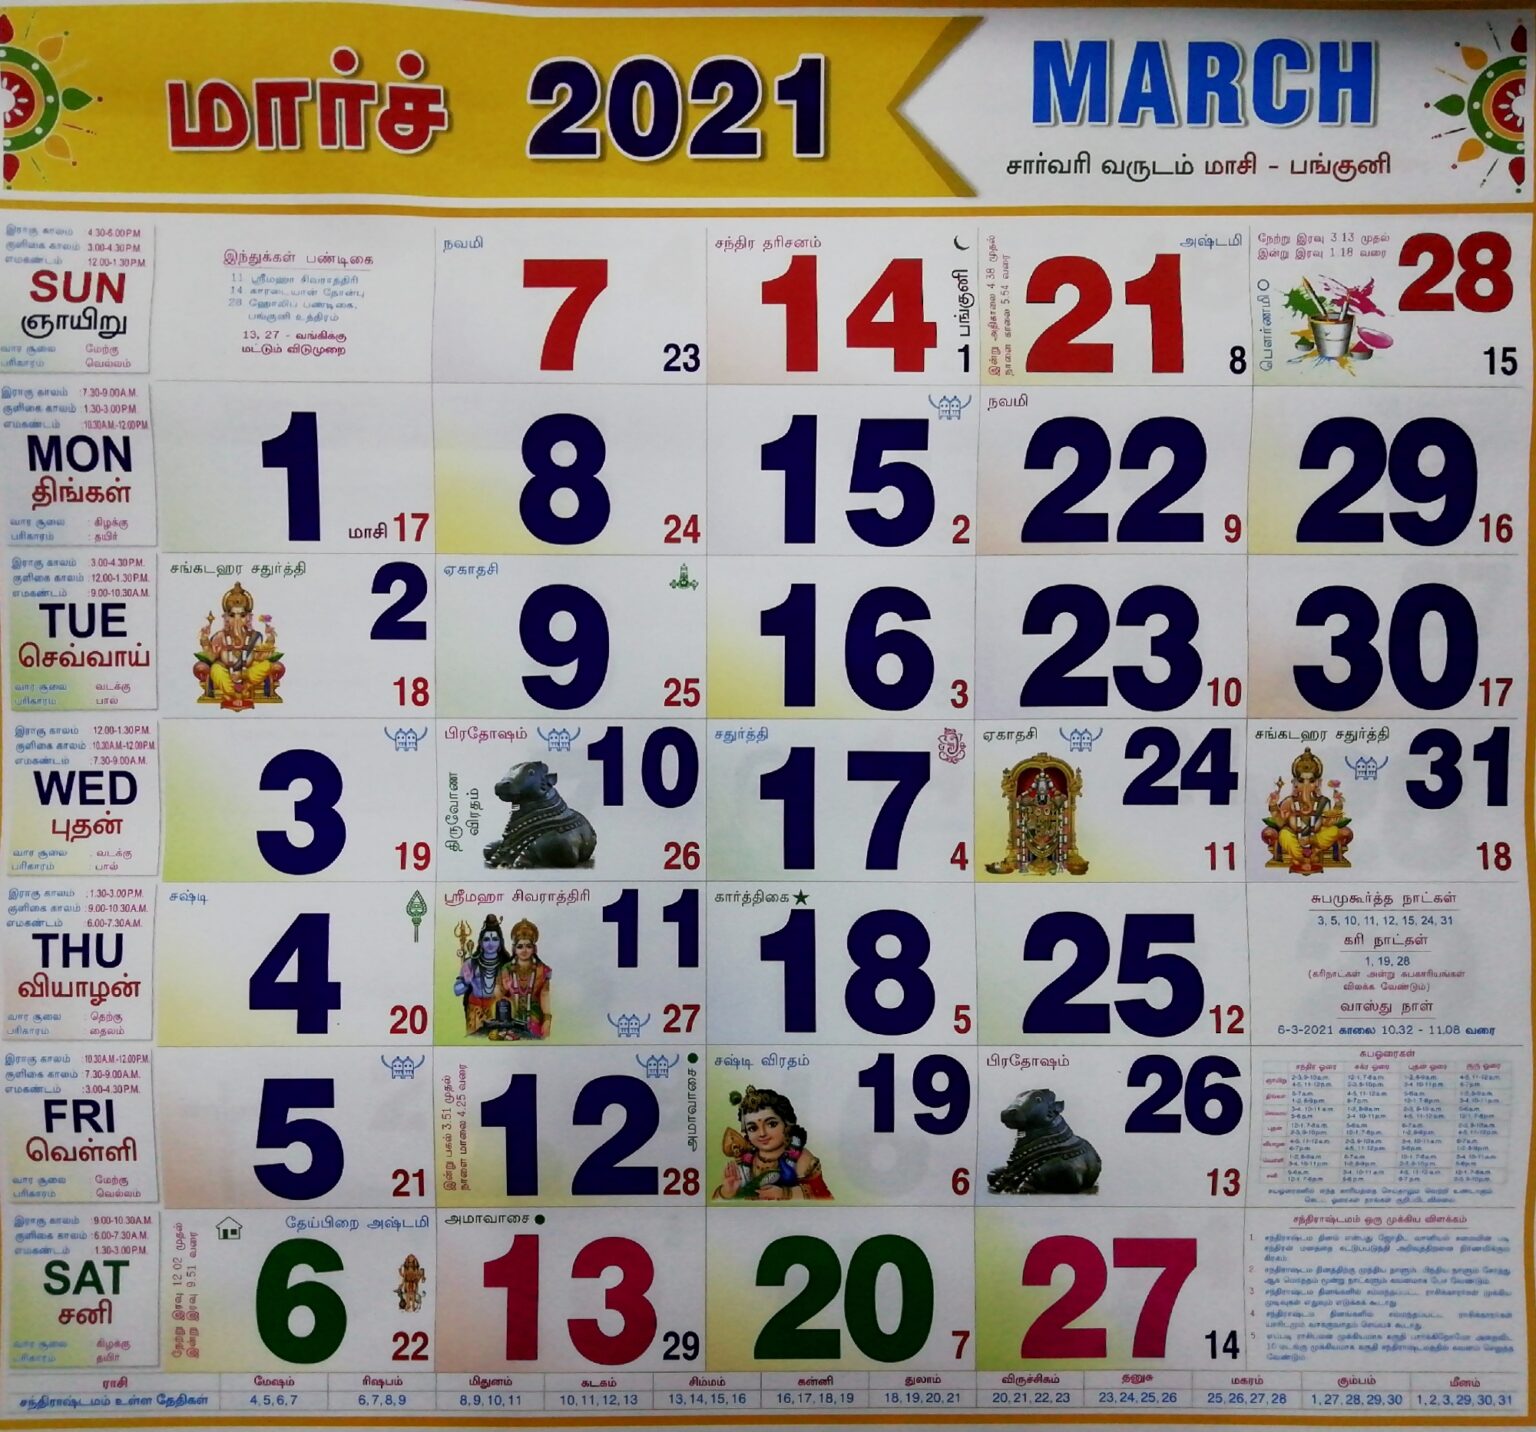 2021 tamil calendar pdf download